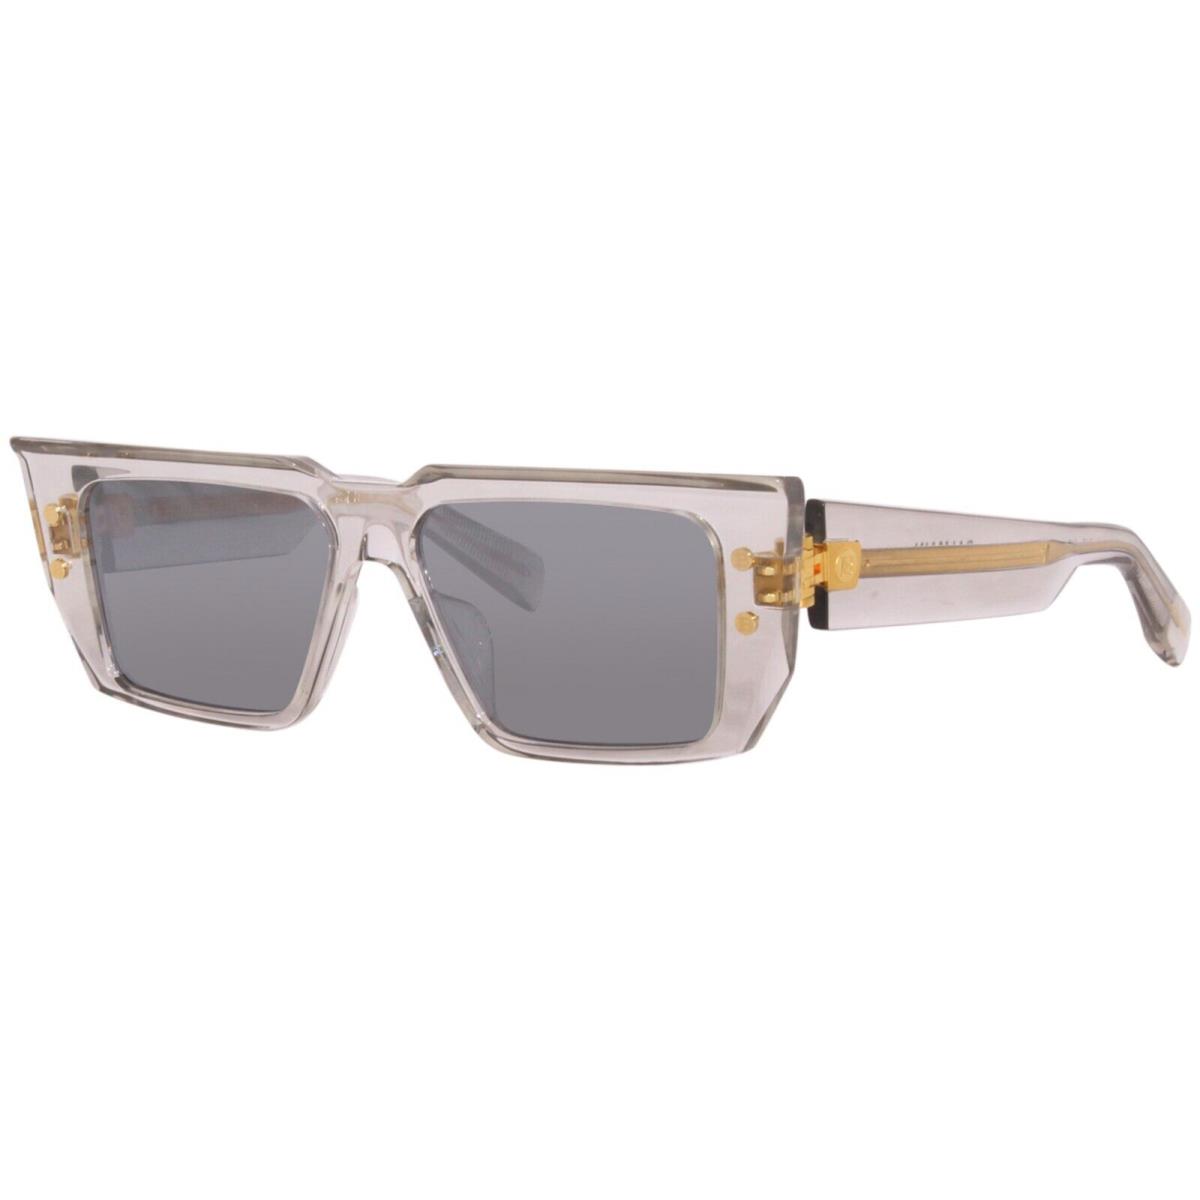 Balmain Sunglasses B-vi Gray Gold Designer Frames Gray Lens 54MM